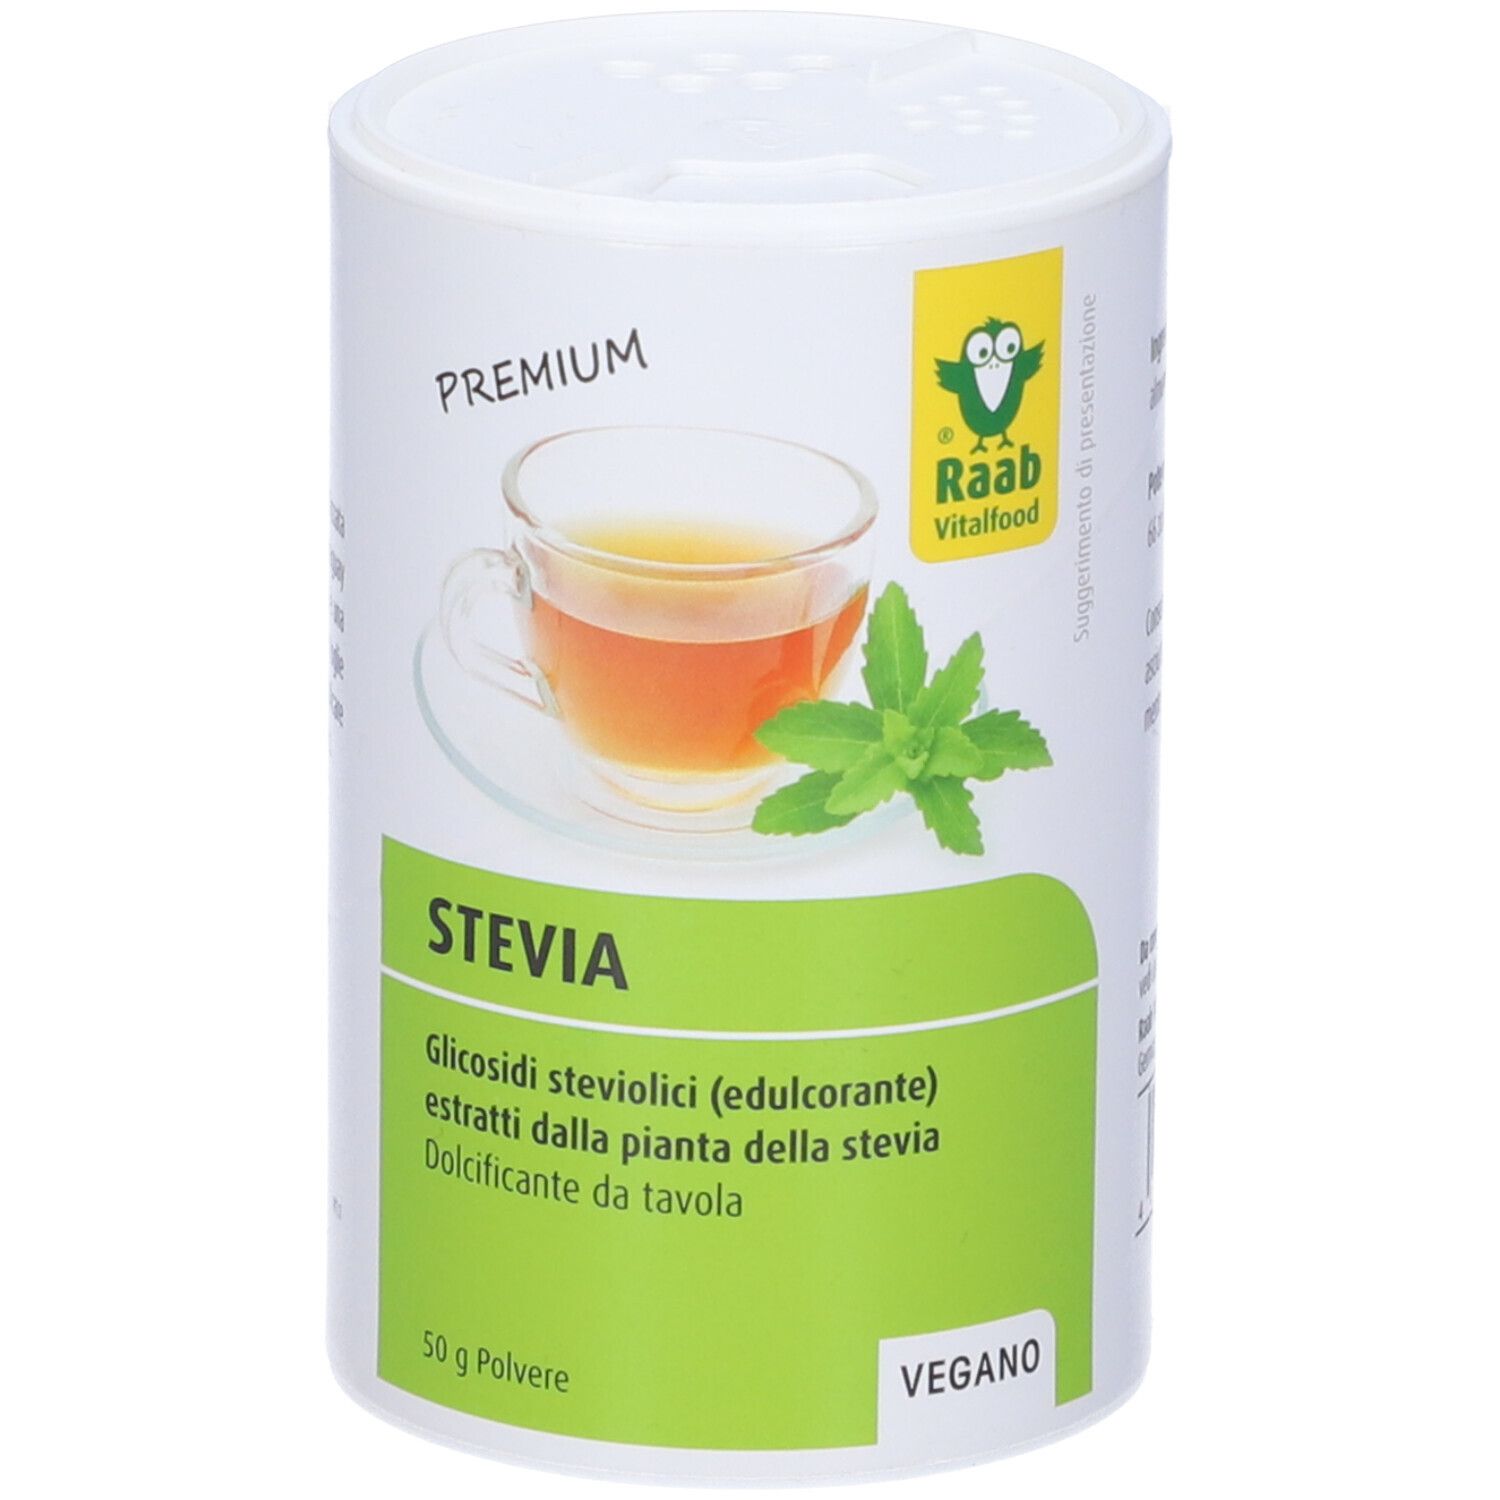 Stevia Tabs, 300 comprimés - Raab Vitalfood - Boutique en ligne